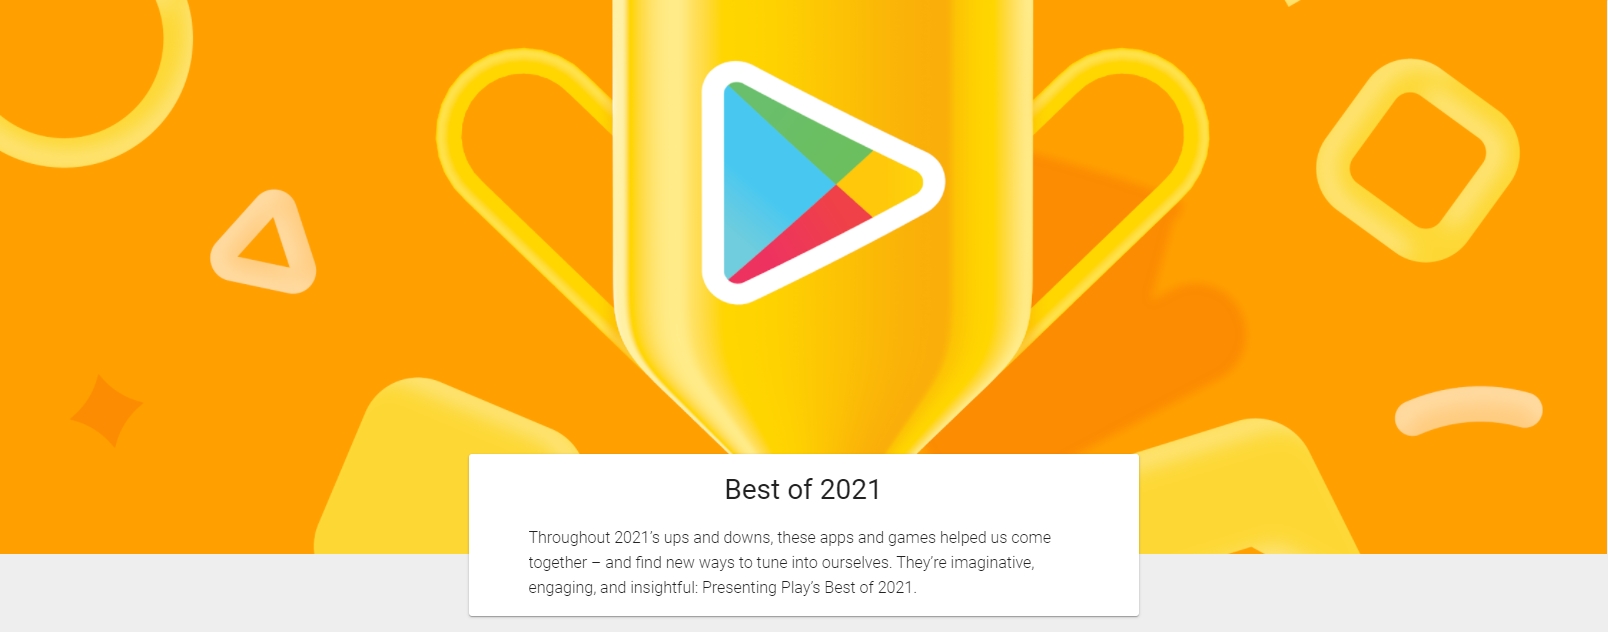 Google Play vyhlásil nejlepší aplikace a hry roku 2021